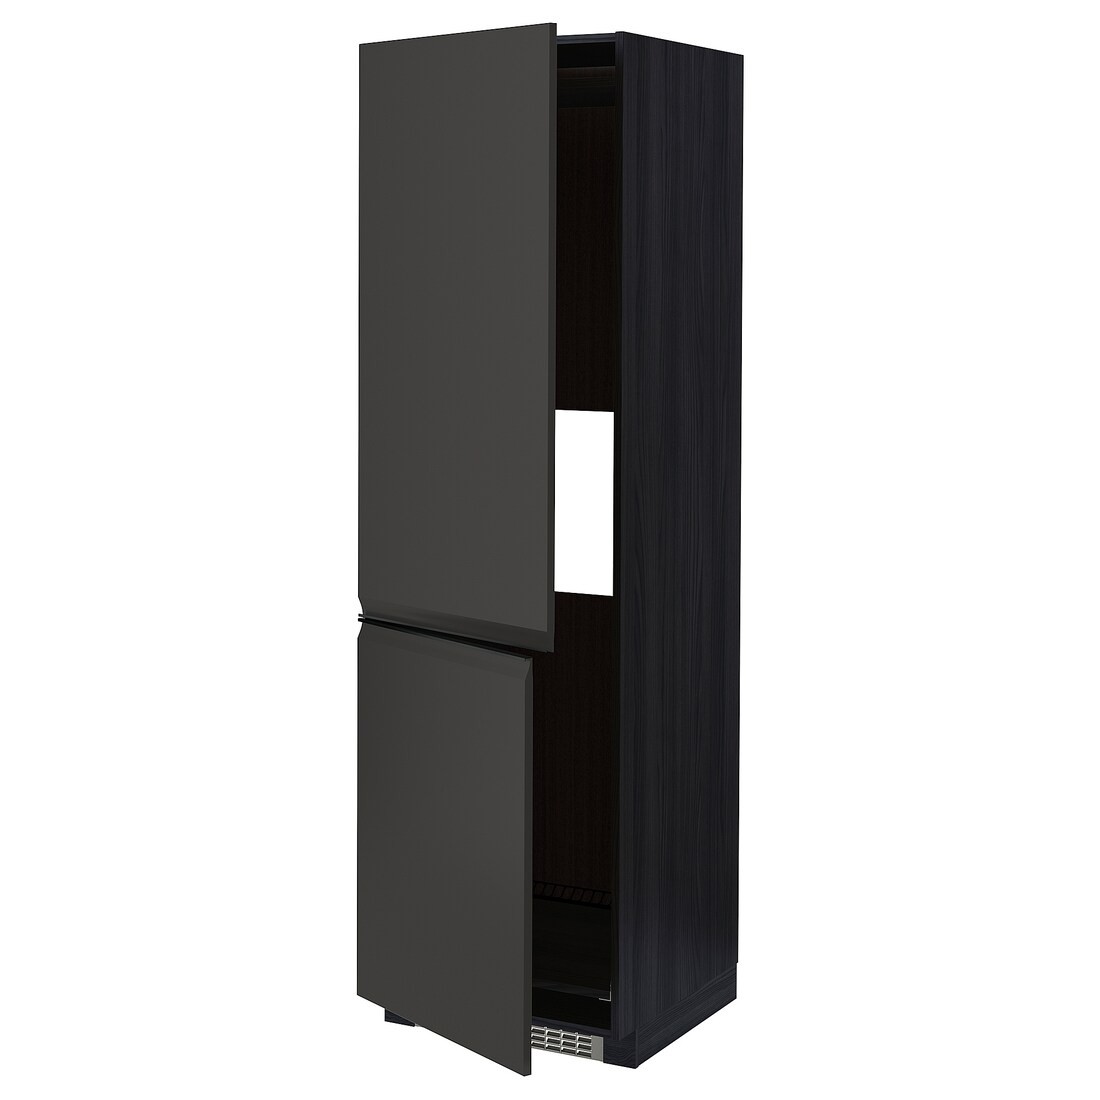 IKEA METOD МЕТОД Высокий шкаф для холодильника / морозильника, черный / Upplöv матовый антрацит, 60x60x200 см 49495504 | 494.955.04